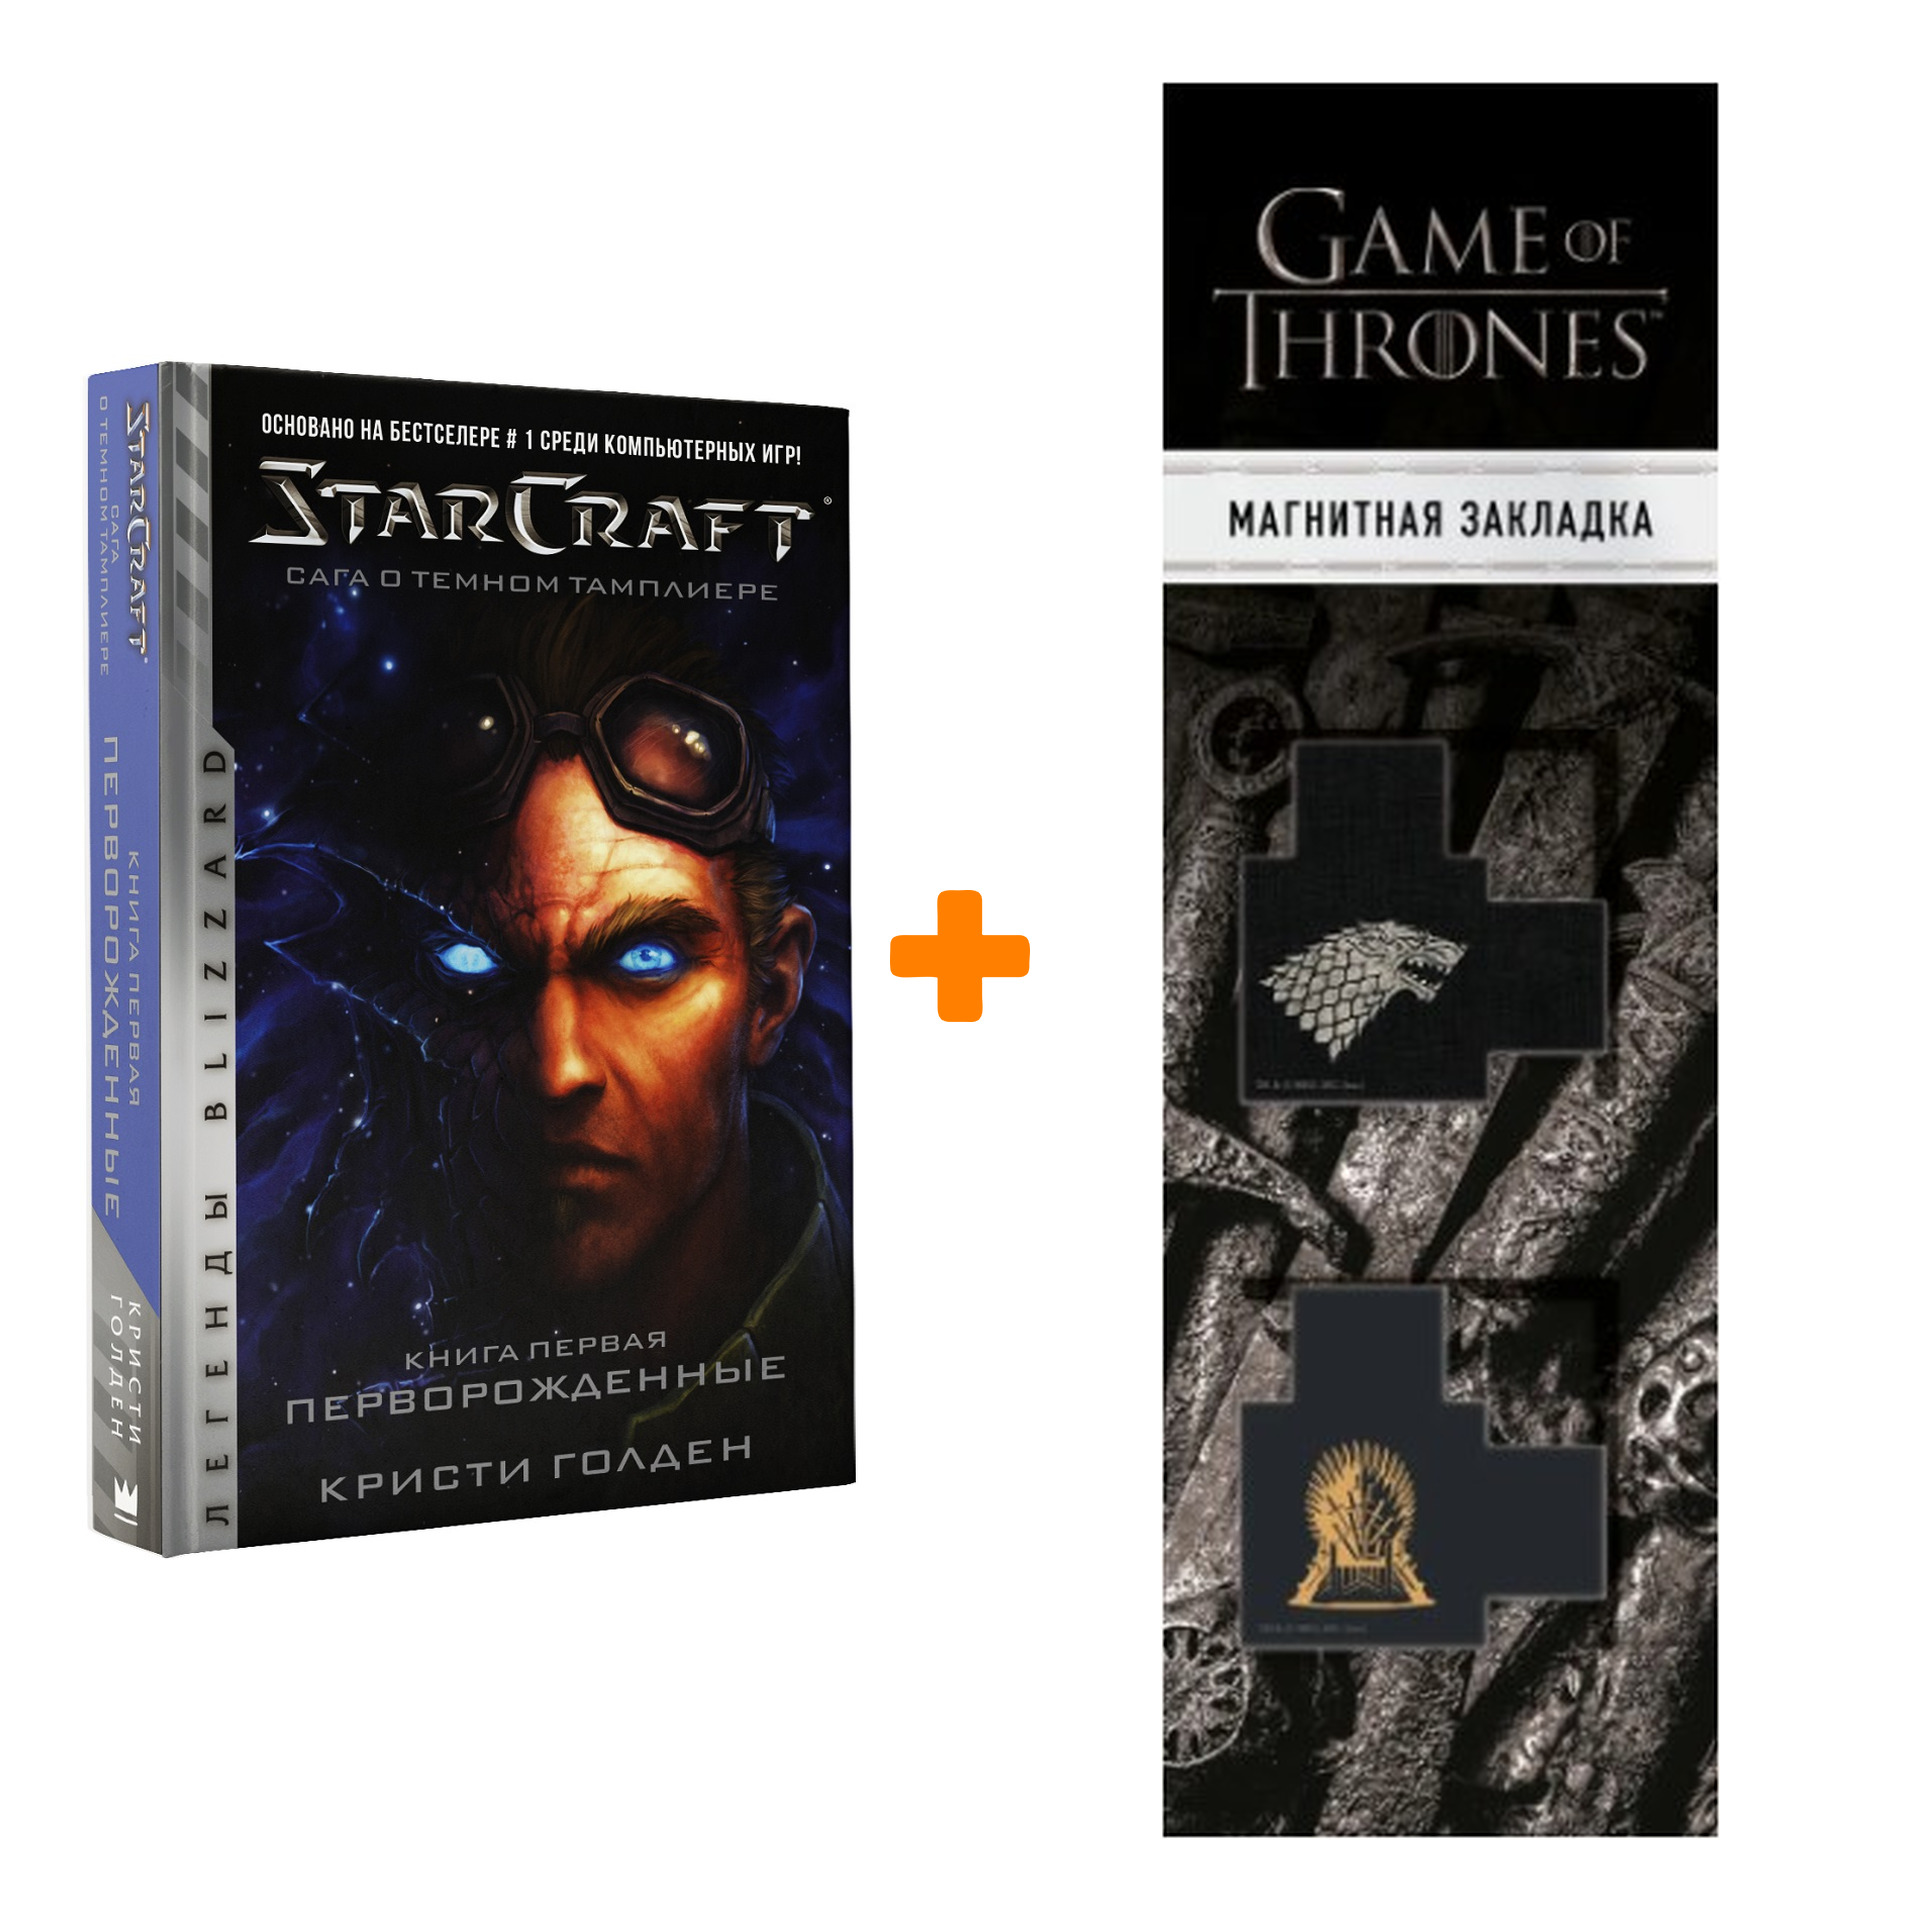 Набор StarCraft Сага о Тёмном тамплиере Книга первая Перворожденные  Голден К. + Закладка Game Of Thrones Трон и Герб Старков магнитная 2-Pack